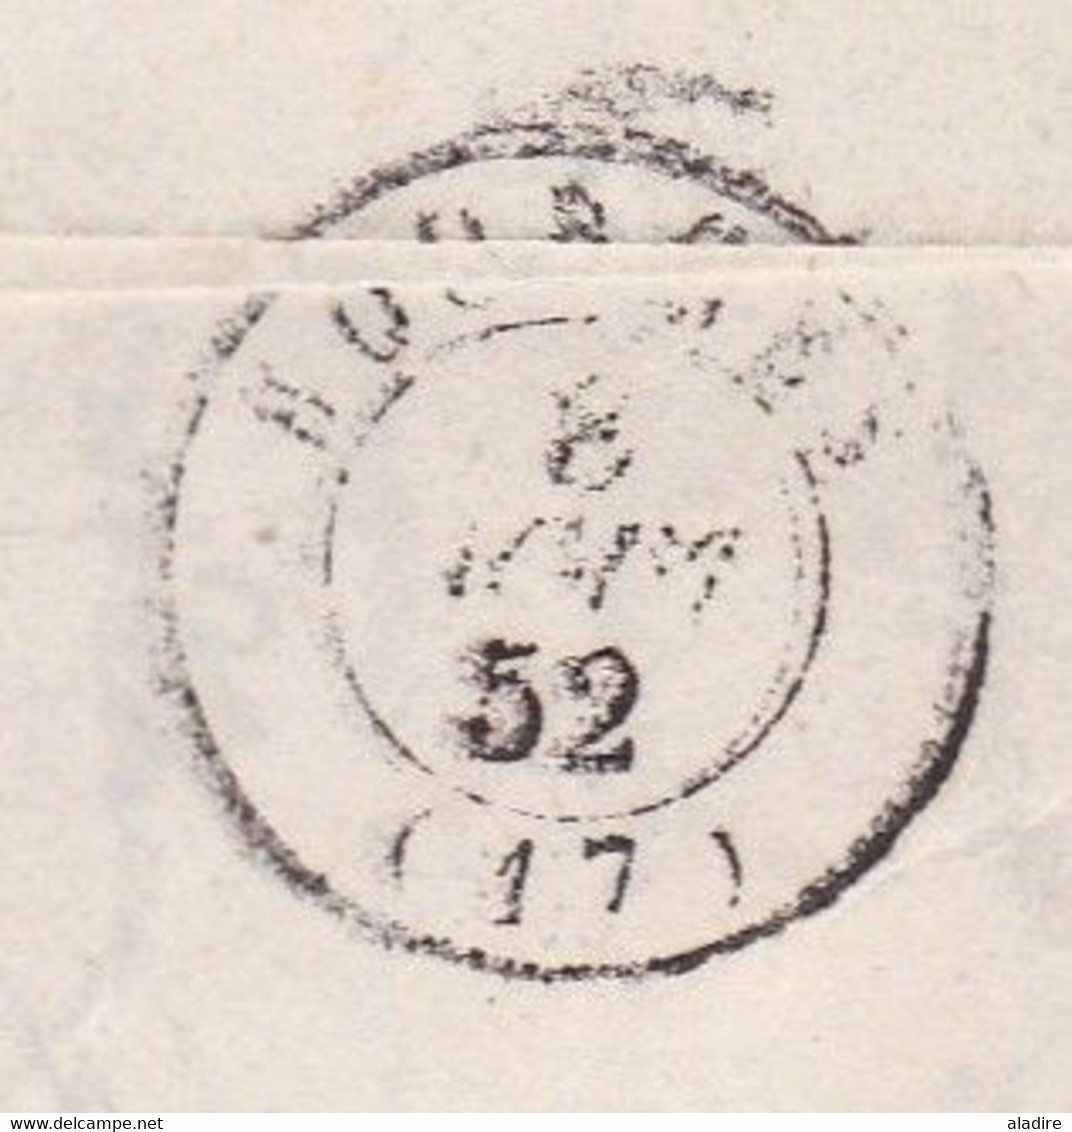 1845 - Cursive 72 PONTCHARTRAIN, auj. Yvelines sur LAC fraternelle 2 pages vers BOURG BARRIER ST SULPICE